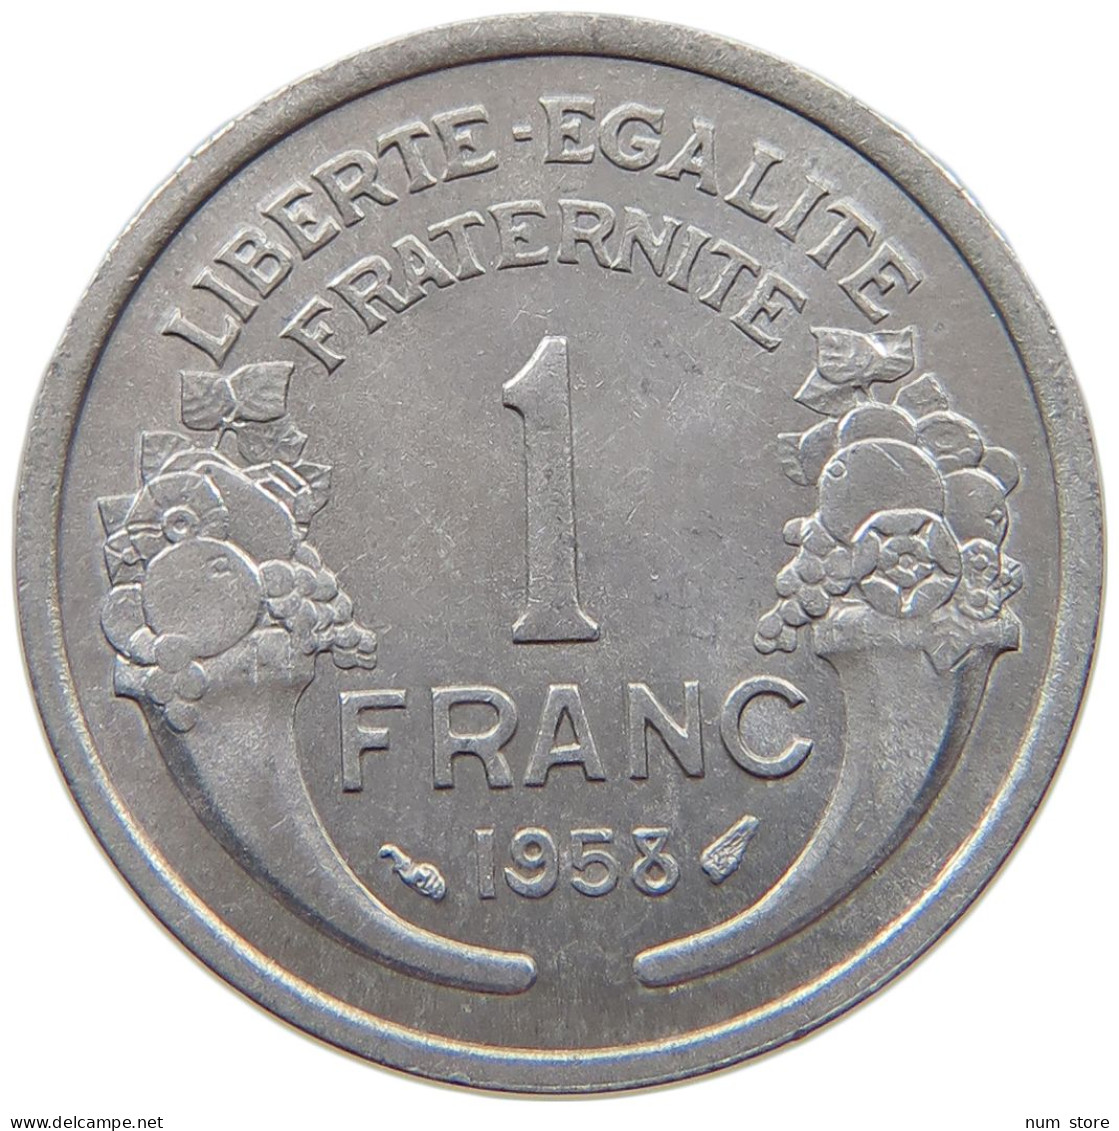 FRANCE 1 FRANC 1958 TOP #s069 0251 - 1 Franc